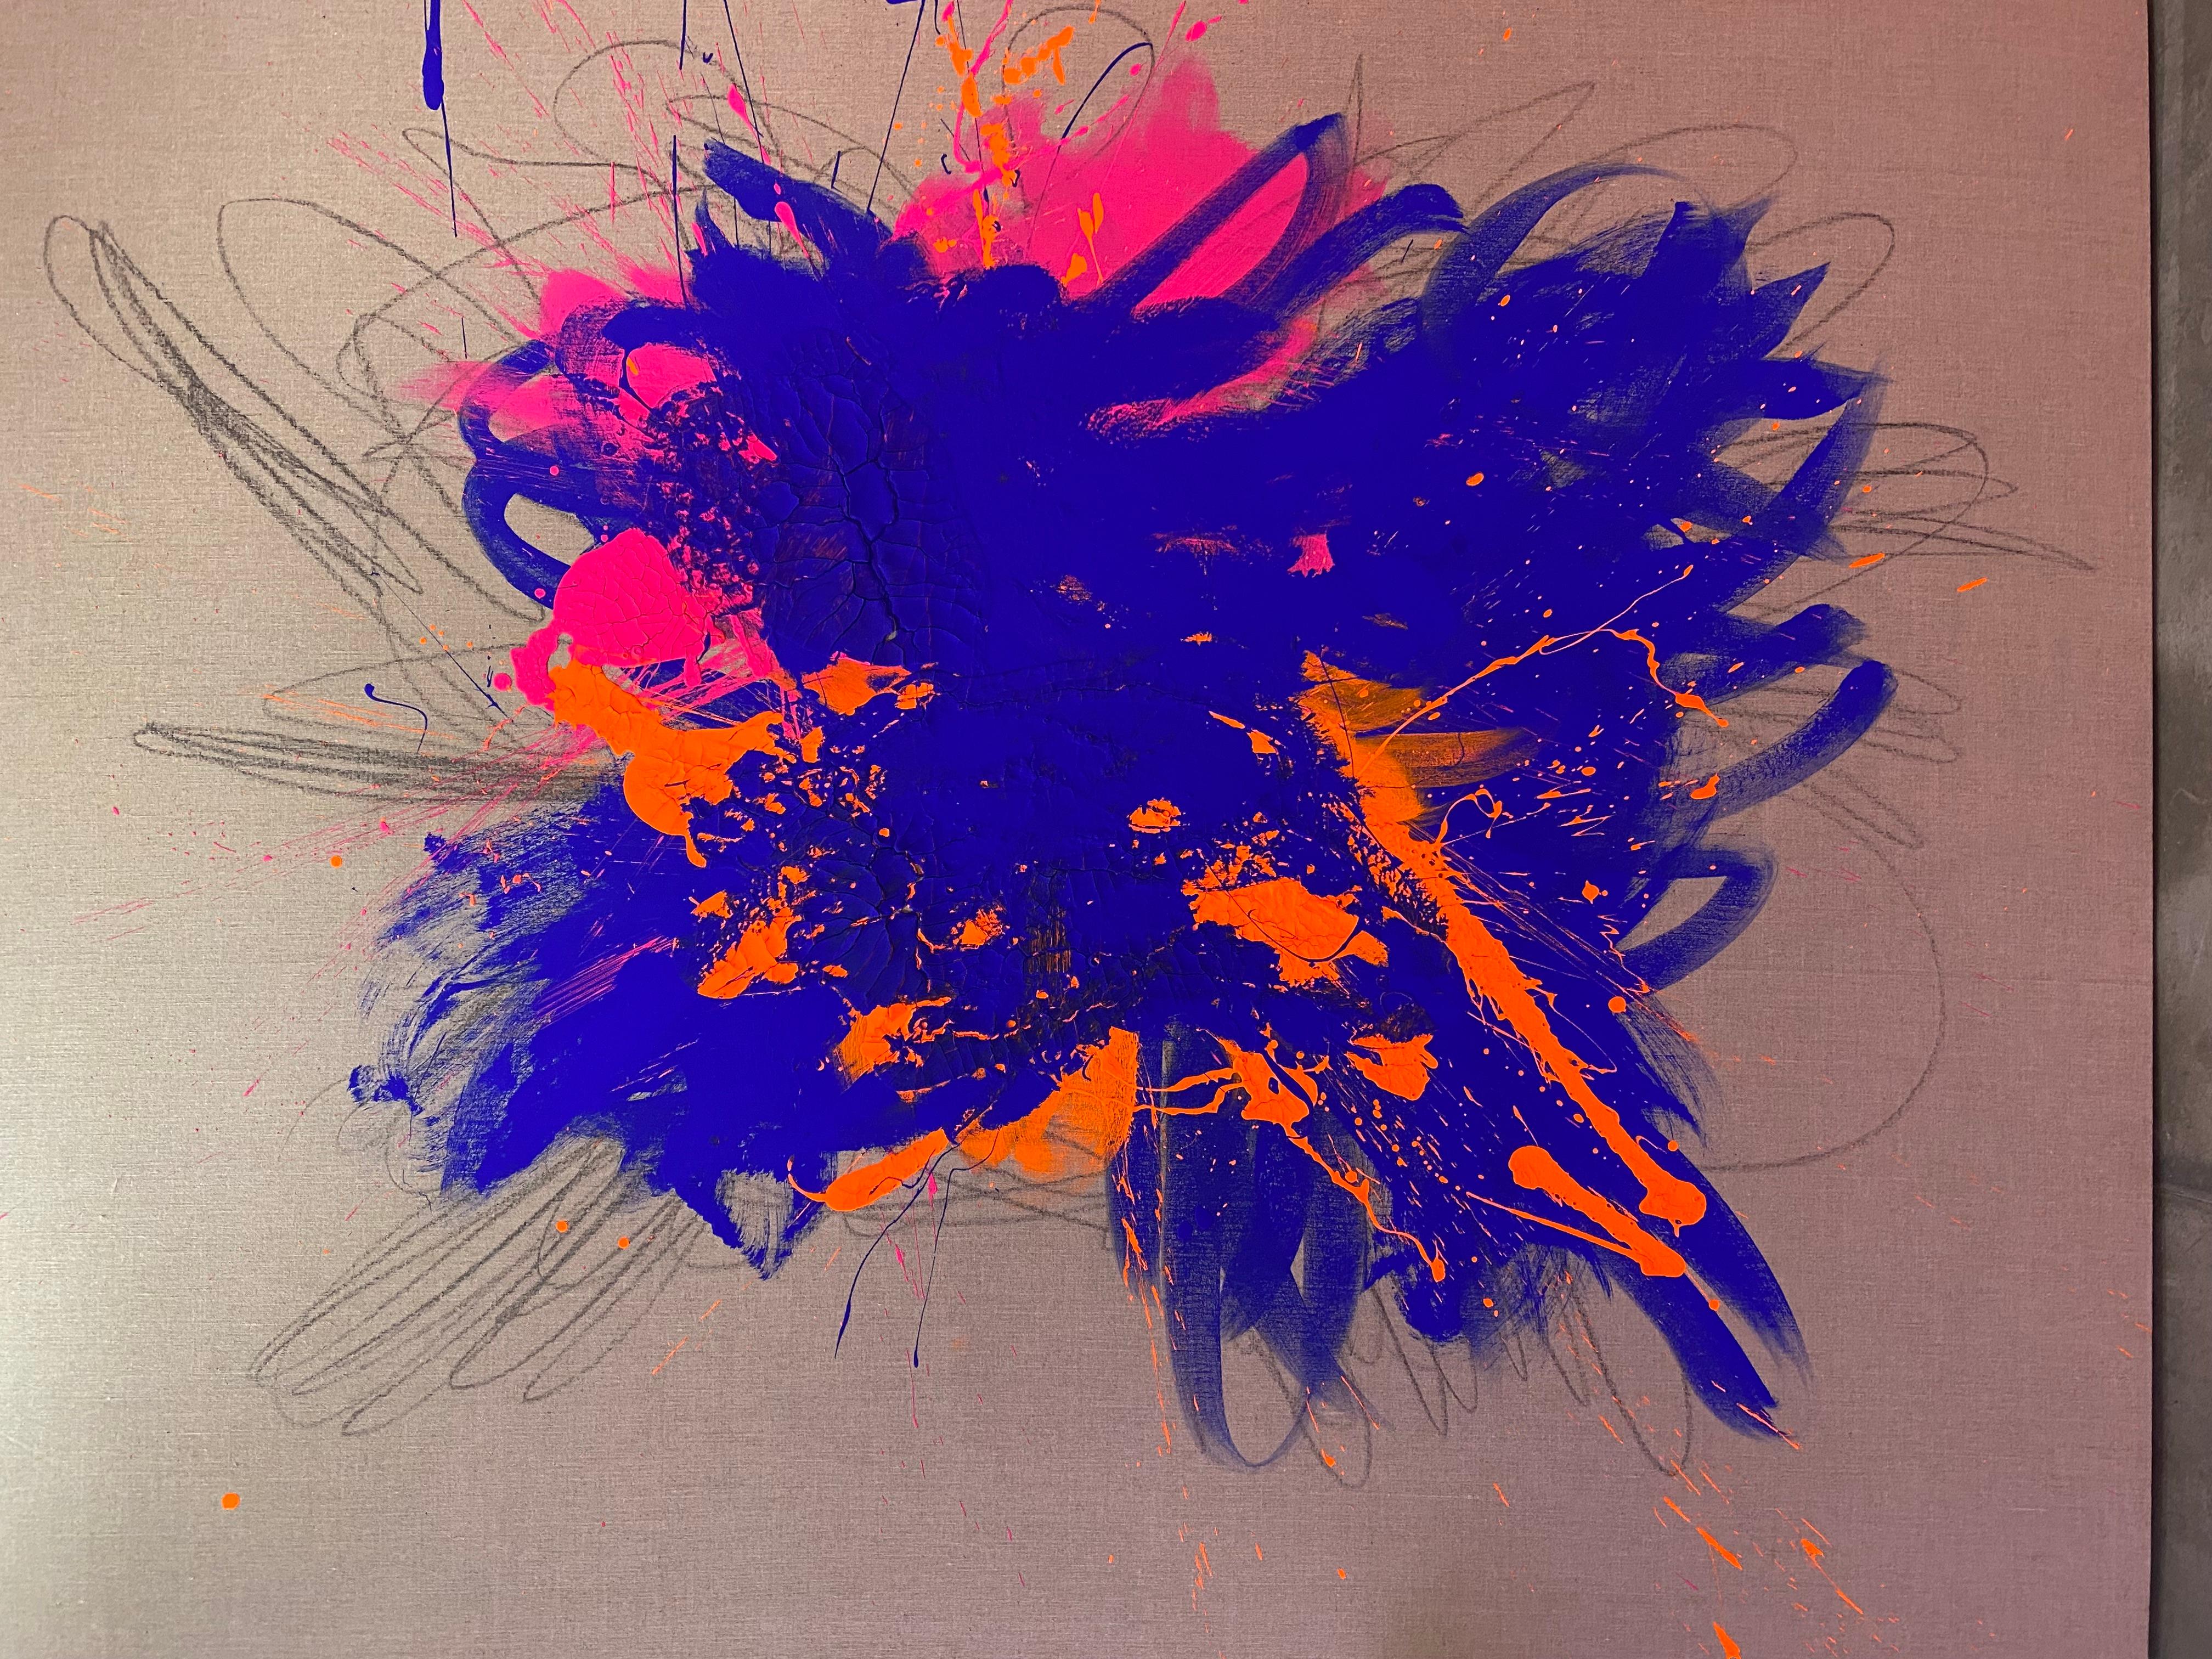 Big bang Abstract 2 - Painting by Carlos Mercado